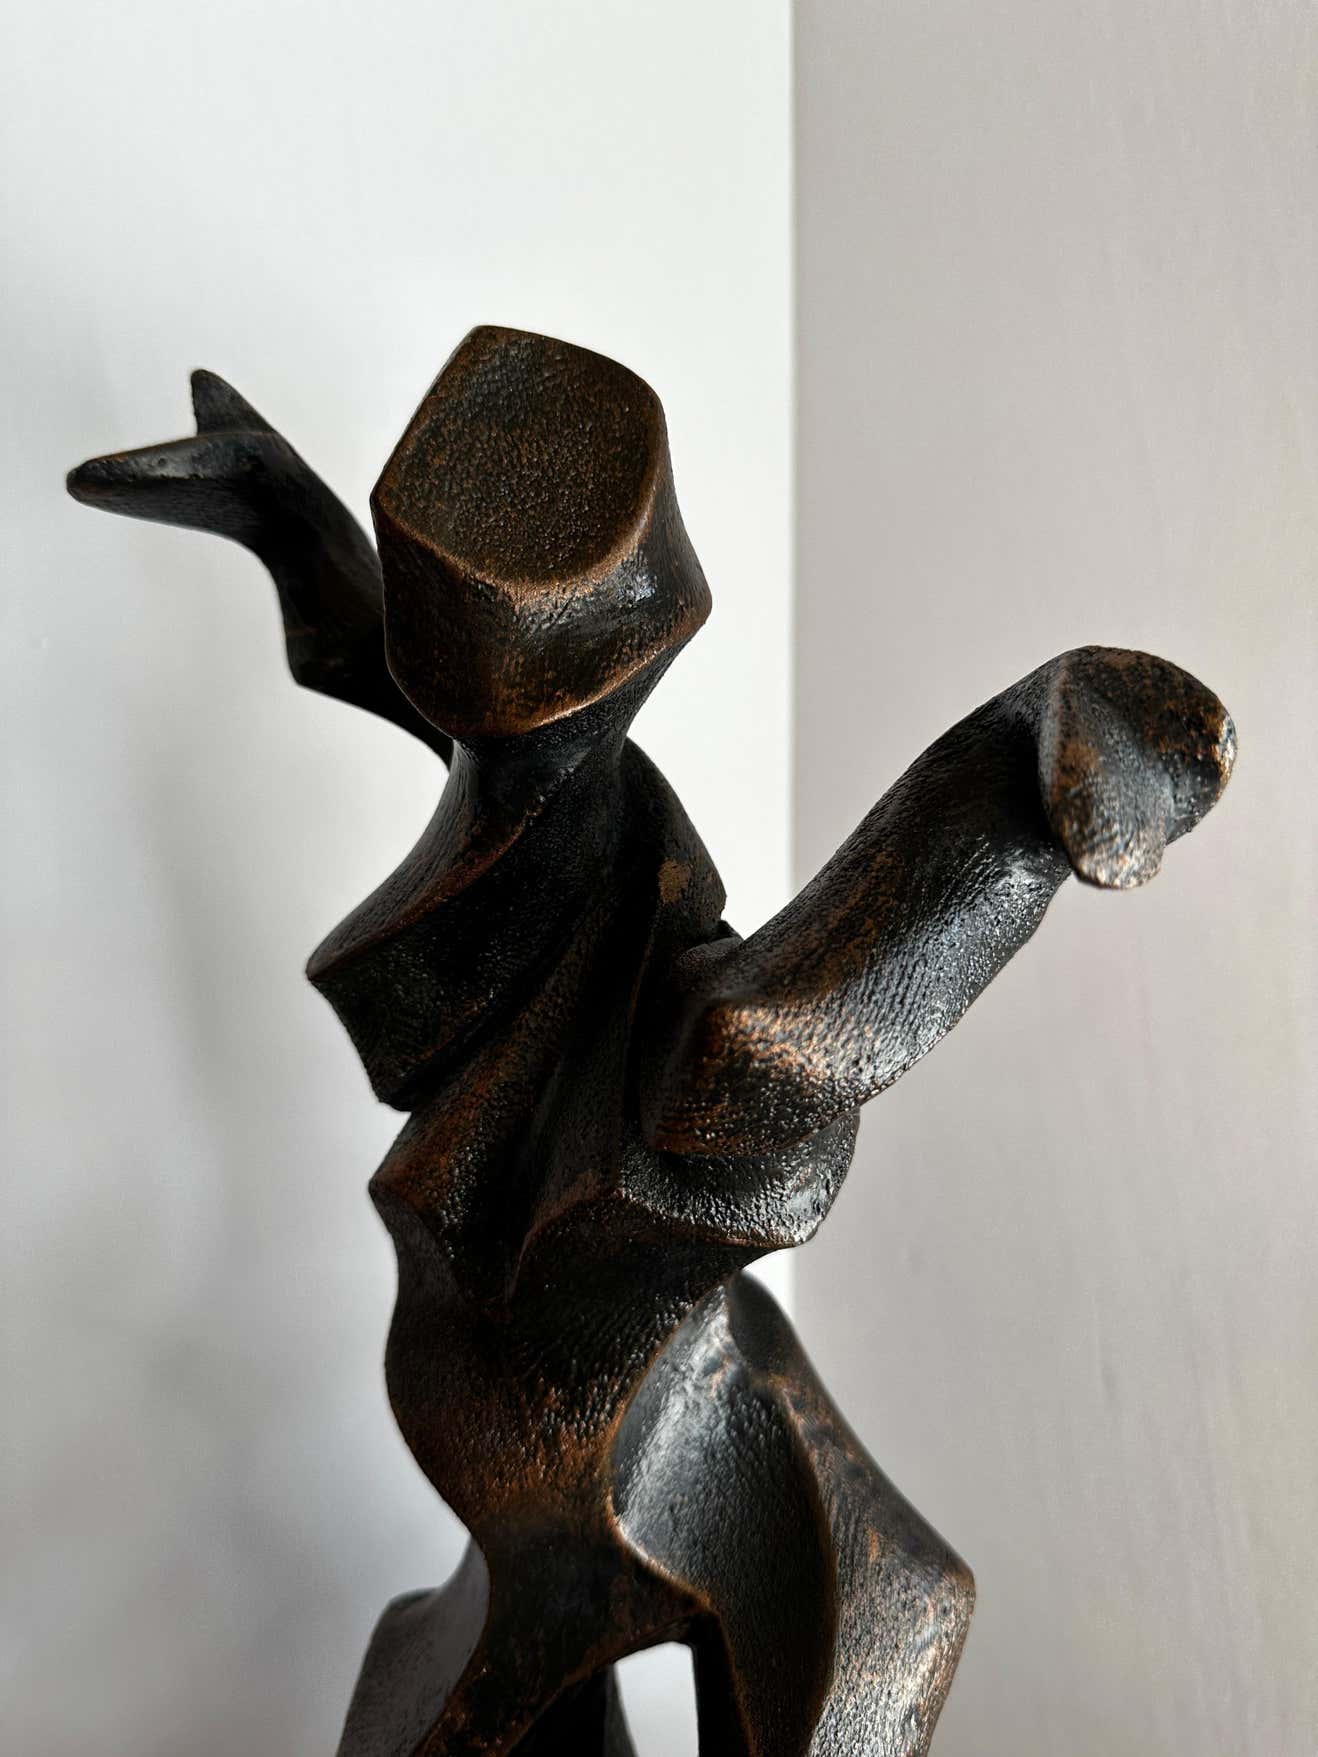 Dancing Sculptures in Resin - A Pair